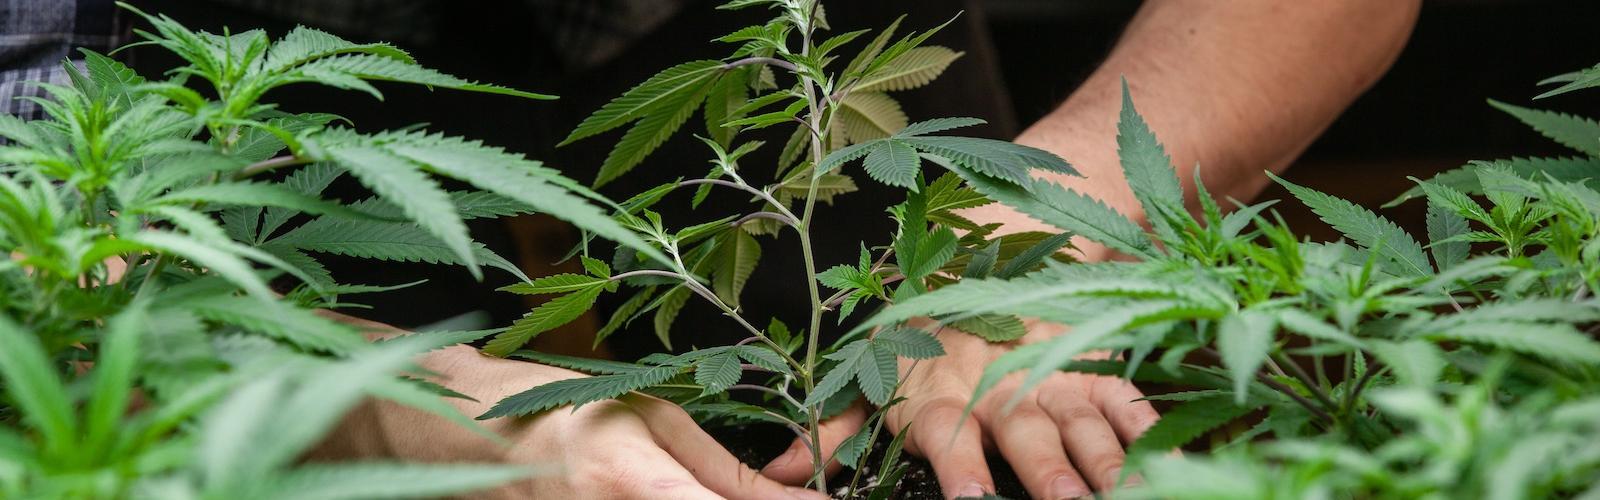 Aprender a gestionar un cultivo de marihuana es relativamente sencillo: el ciclo de vida de la planta sigue unas fases de crecimiento precisas, empezando por la siembra de las semillas de marihuana, que terminan su periodo de latencia una vez que entran en contacto con la humedad.